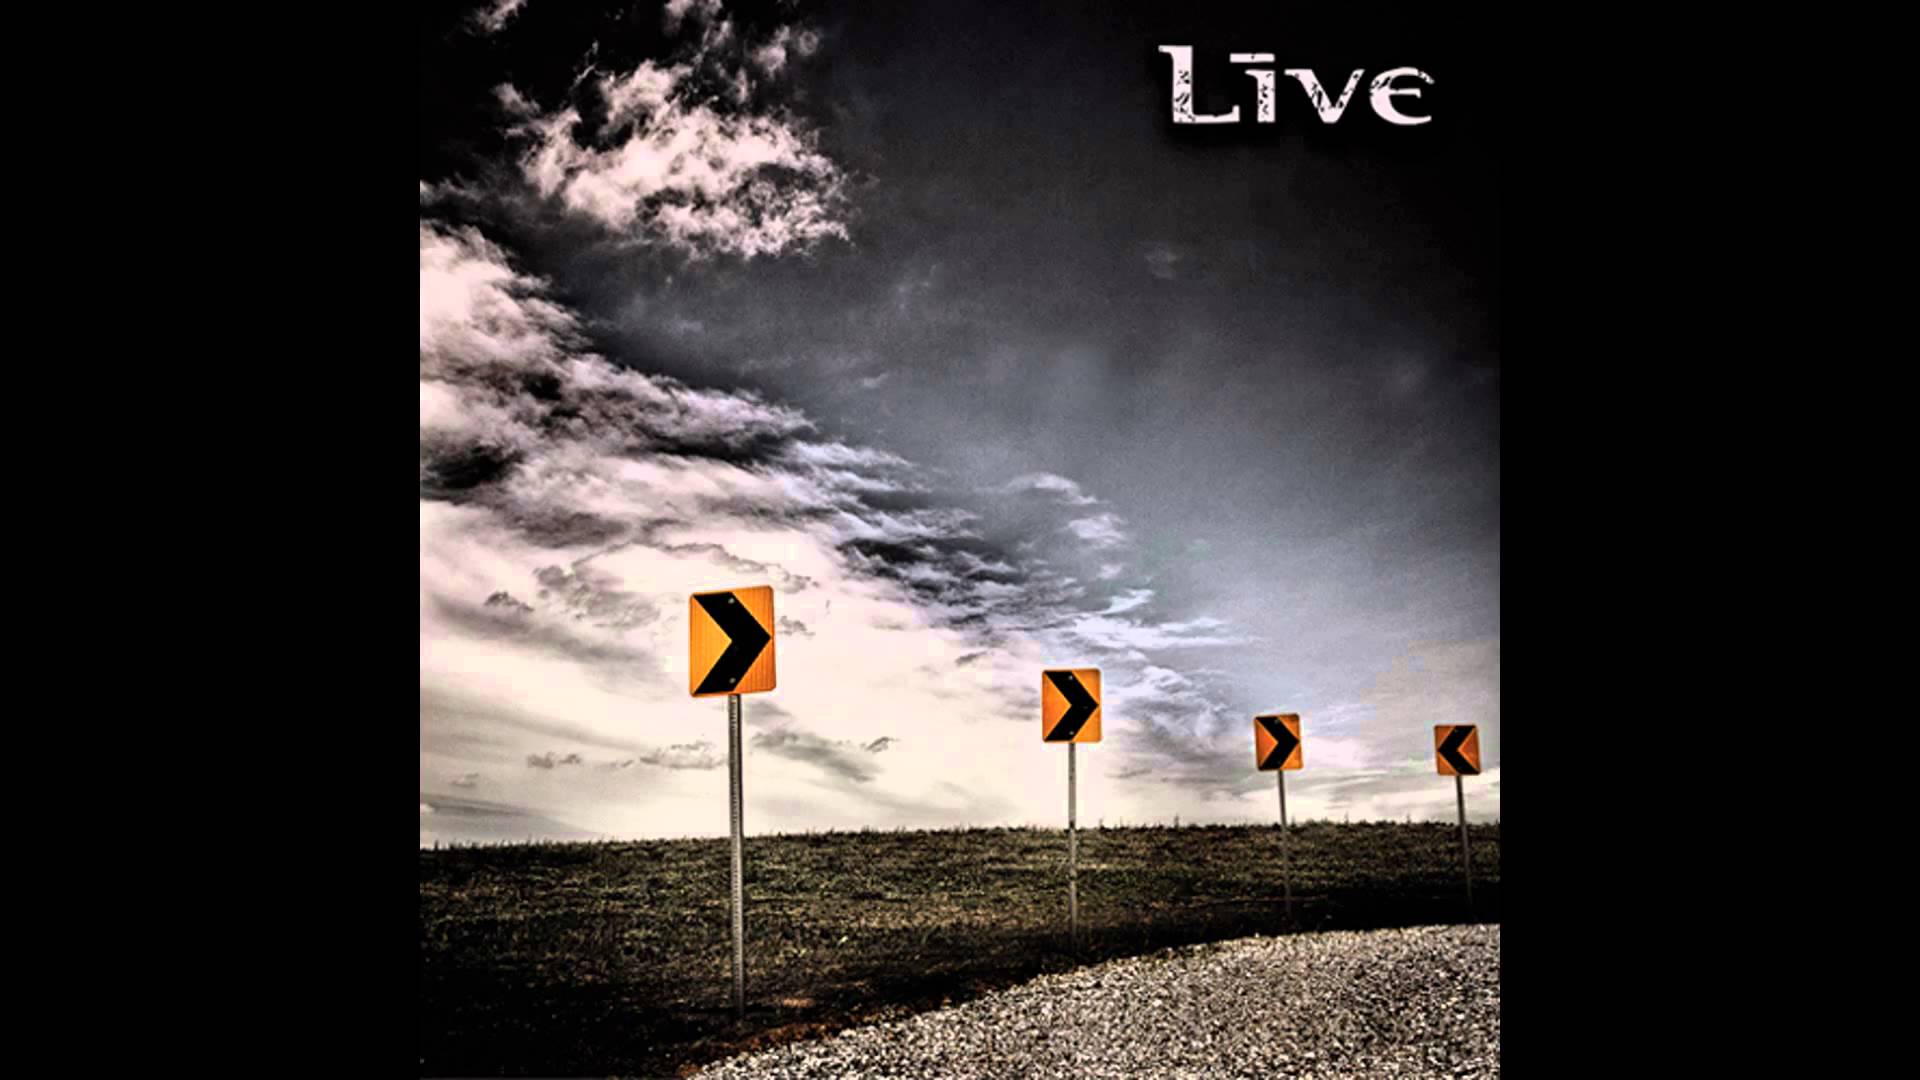 Live - The Turn(Full Album) 2014 - YouTube